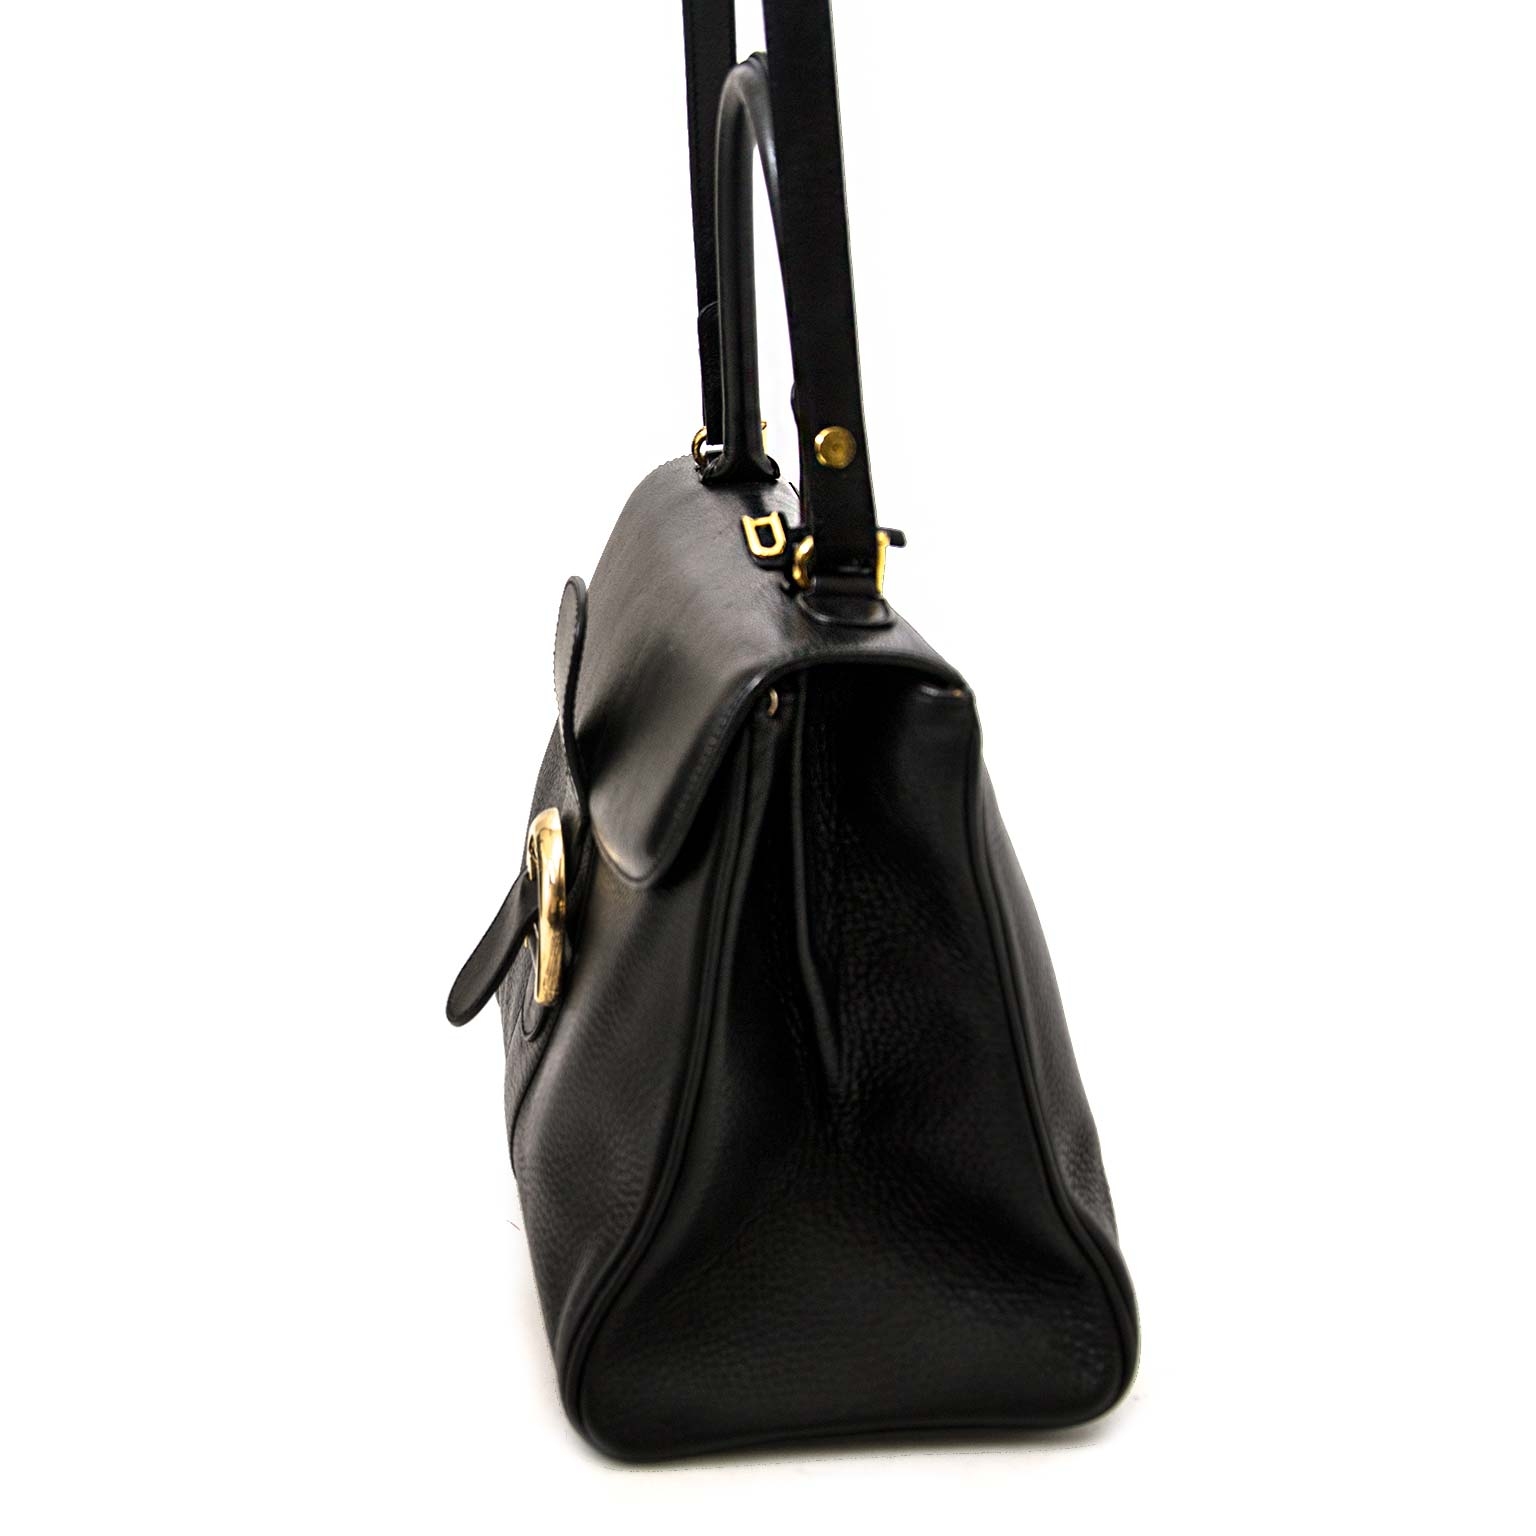 Delvaux Lé Brillant MM - Black Handle Bags, Handbags - DVX22792